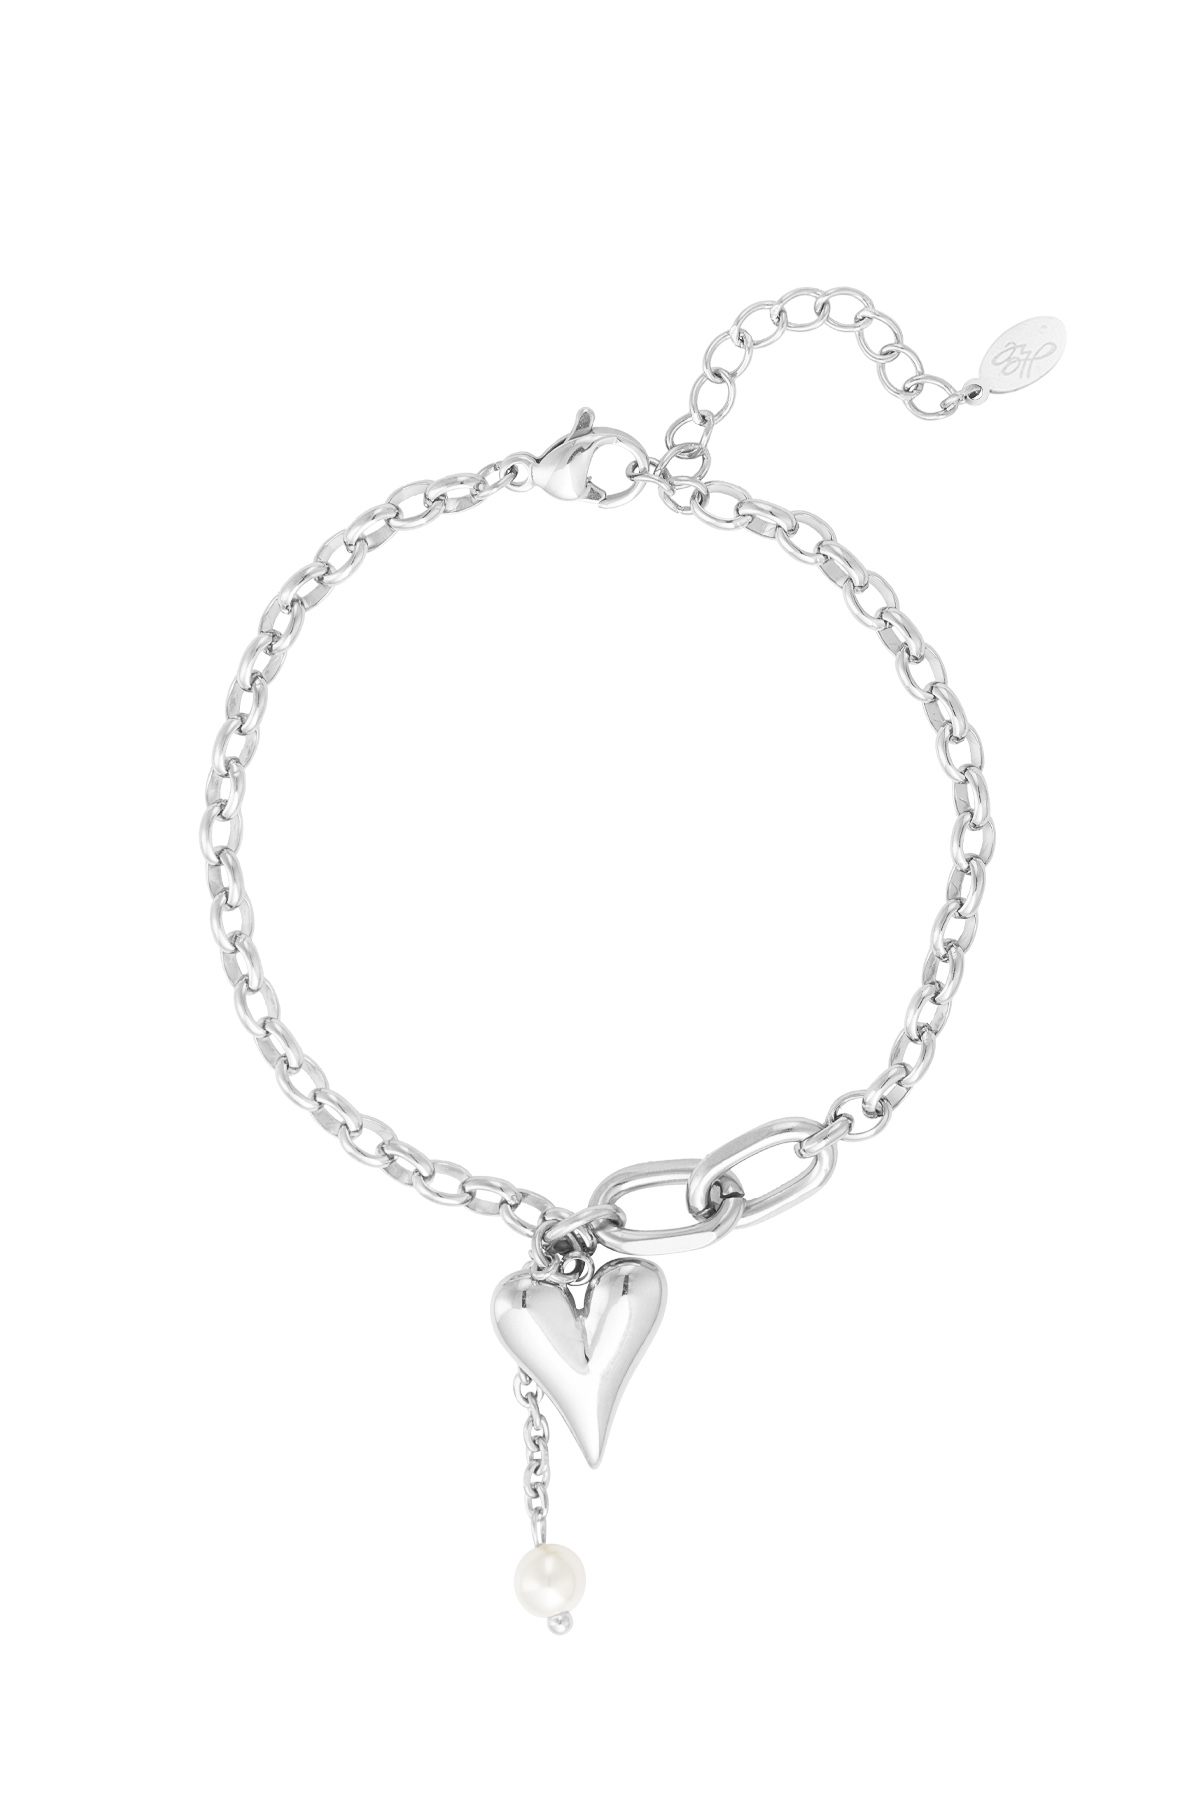 Bracelet lovely hearts - silver h5 